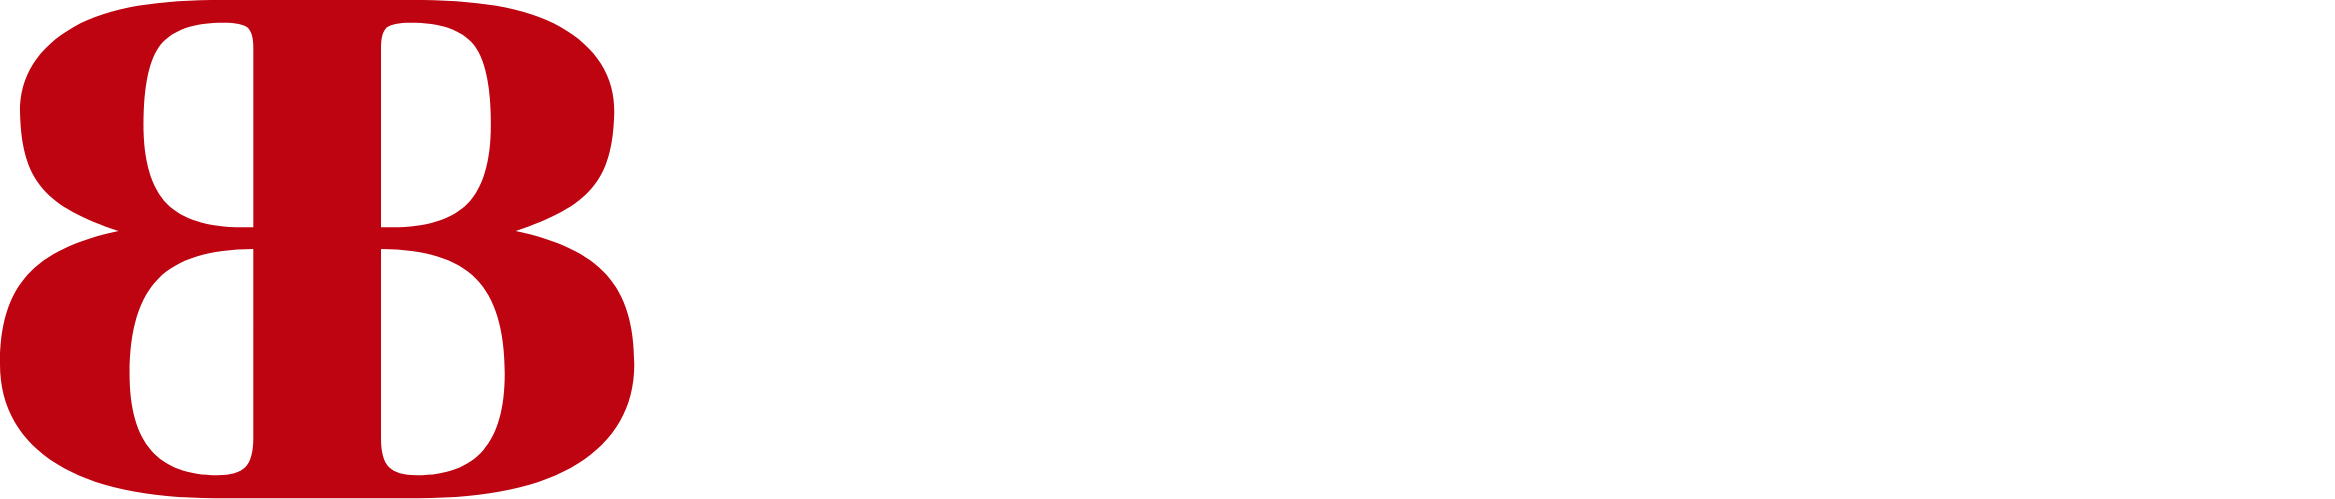 Banco del Bajío logo large for dark backgrounds (transparent PNG)